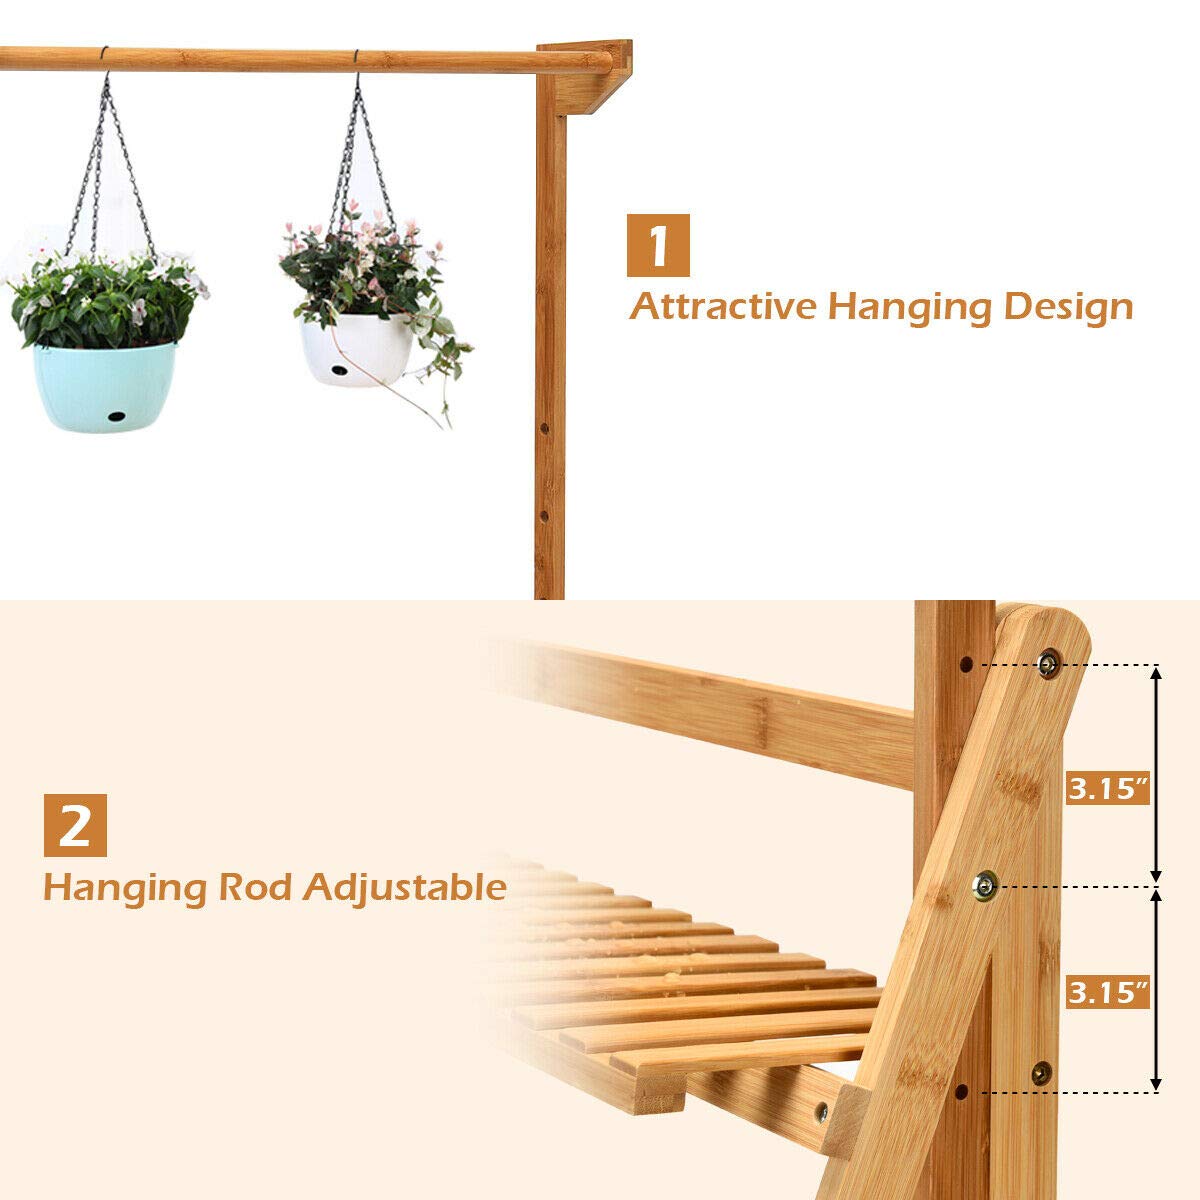 Giantex 3-Tier Hanging Plant Stand Storage Shelf, Folding Flower Pot Organizer Display Storage Rack